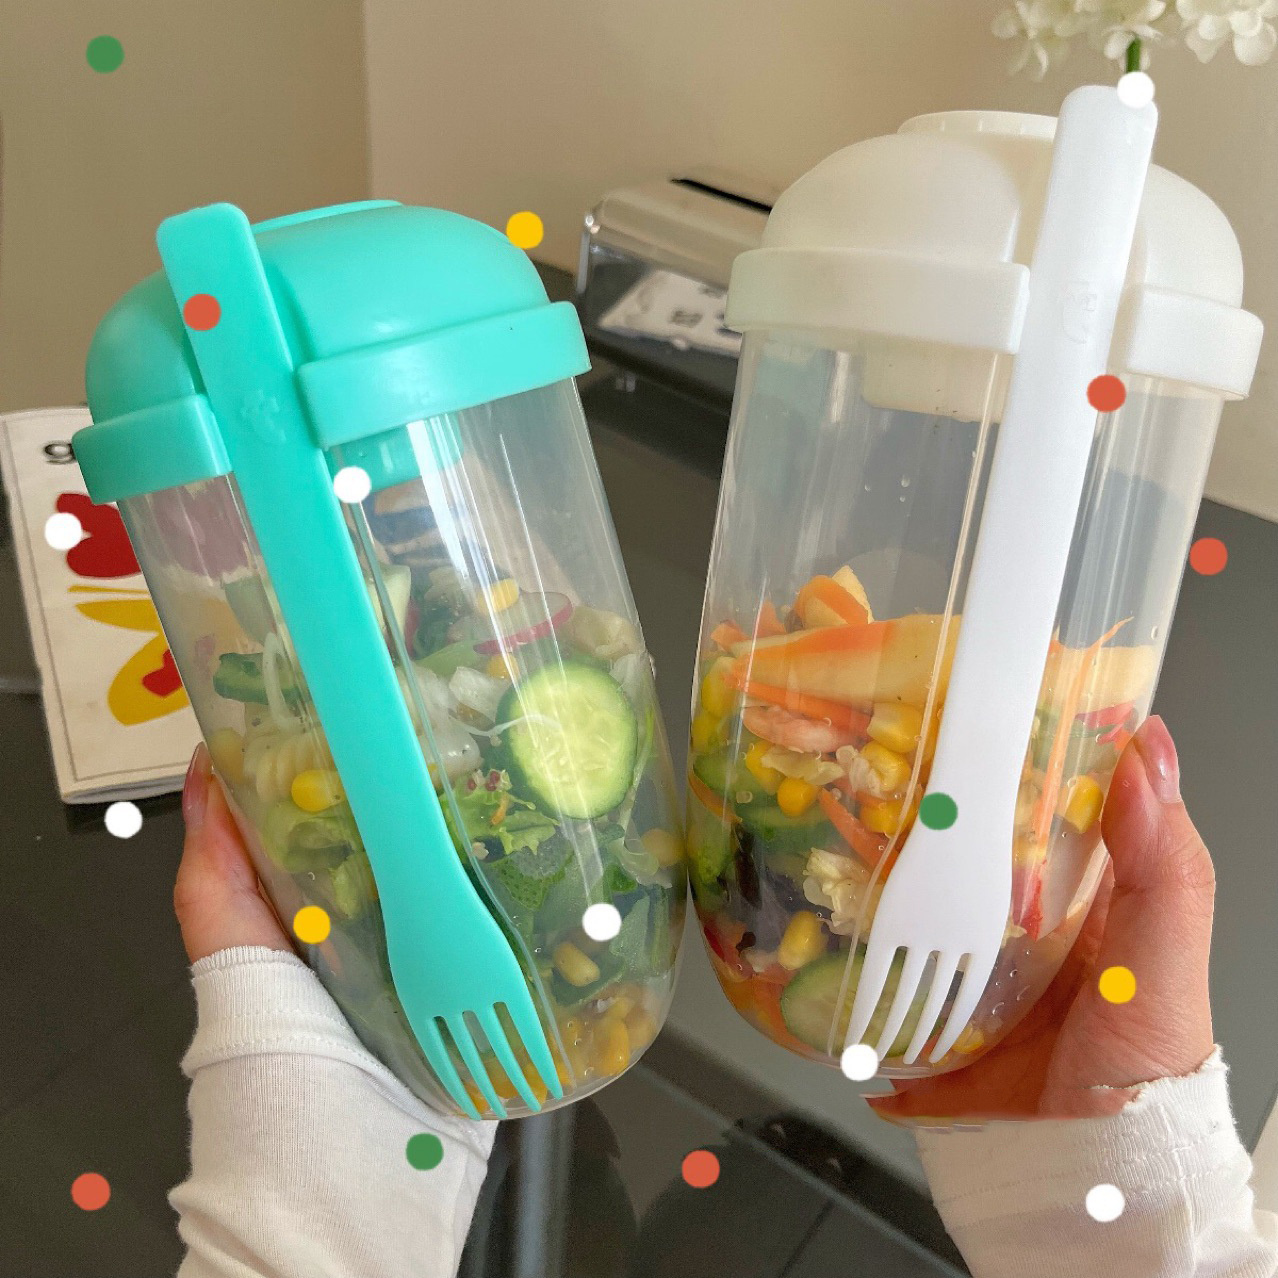 Lunch Box Salade avec Fourchette et Pot à vinaigrette - Vaisselle plastique  - Décomania